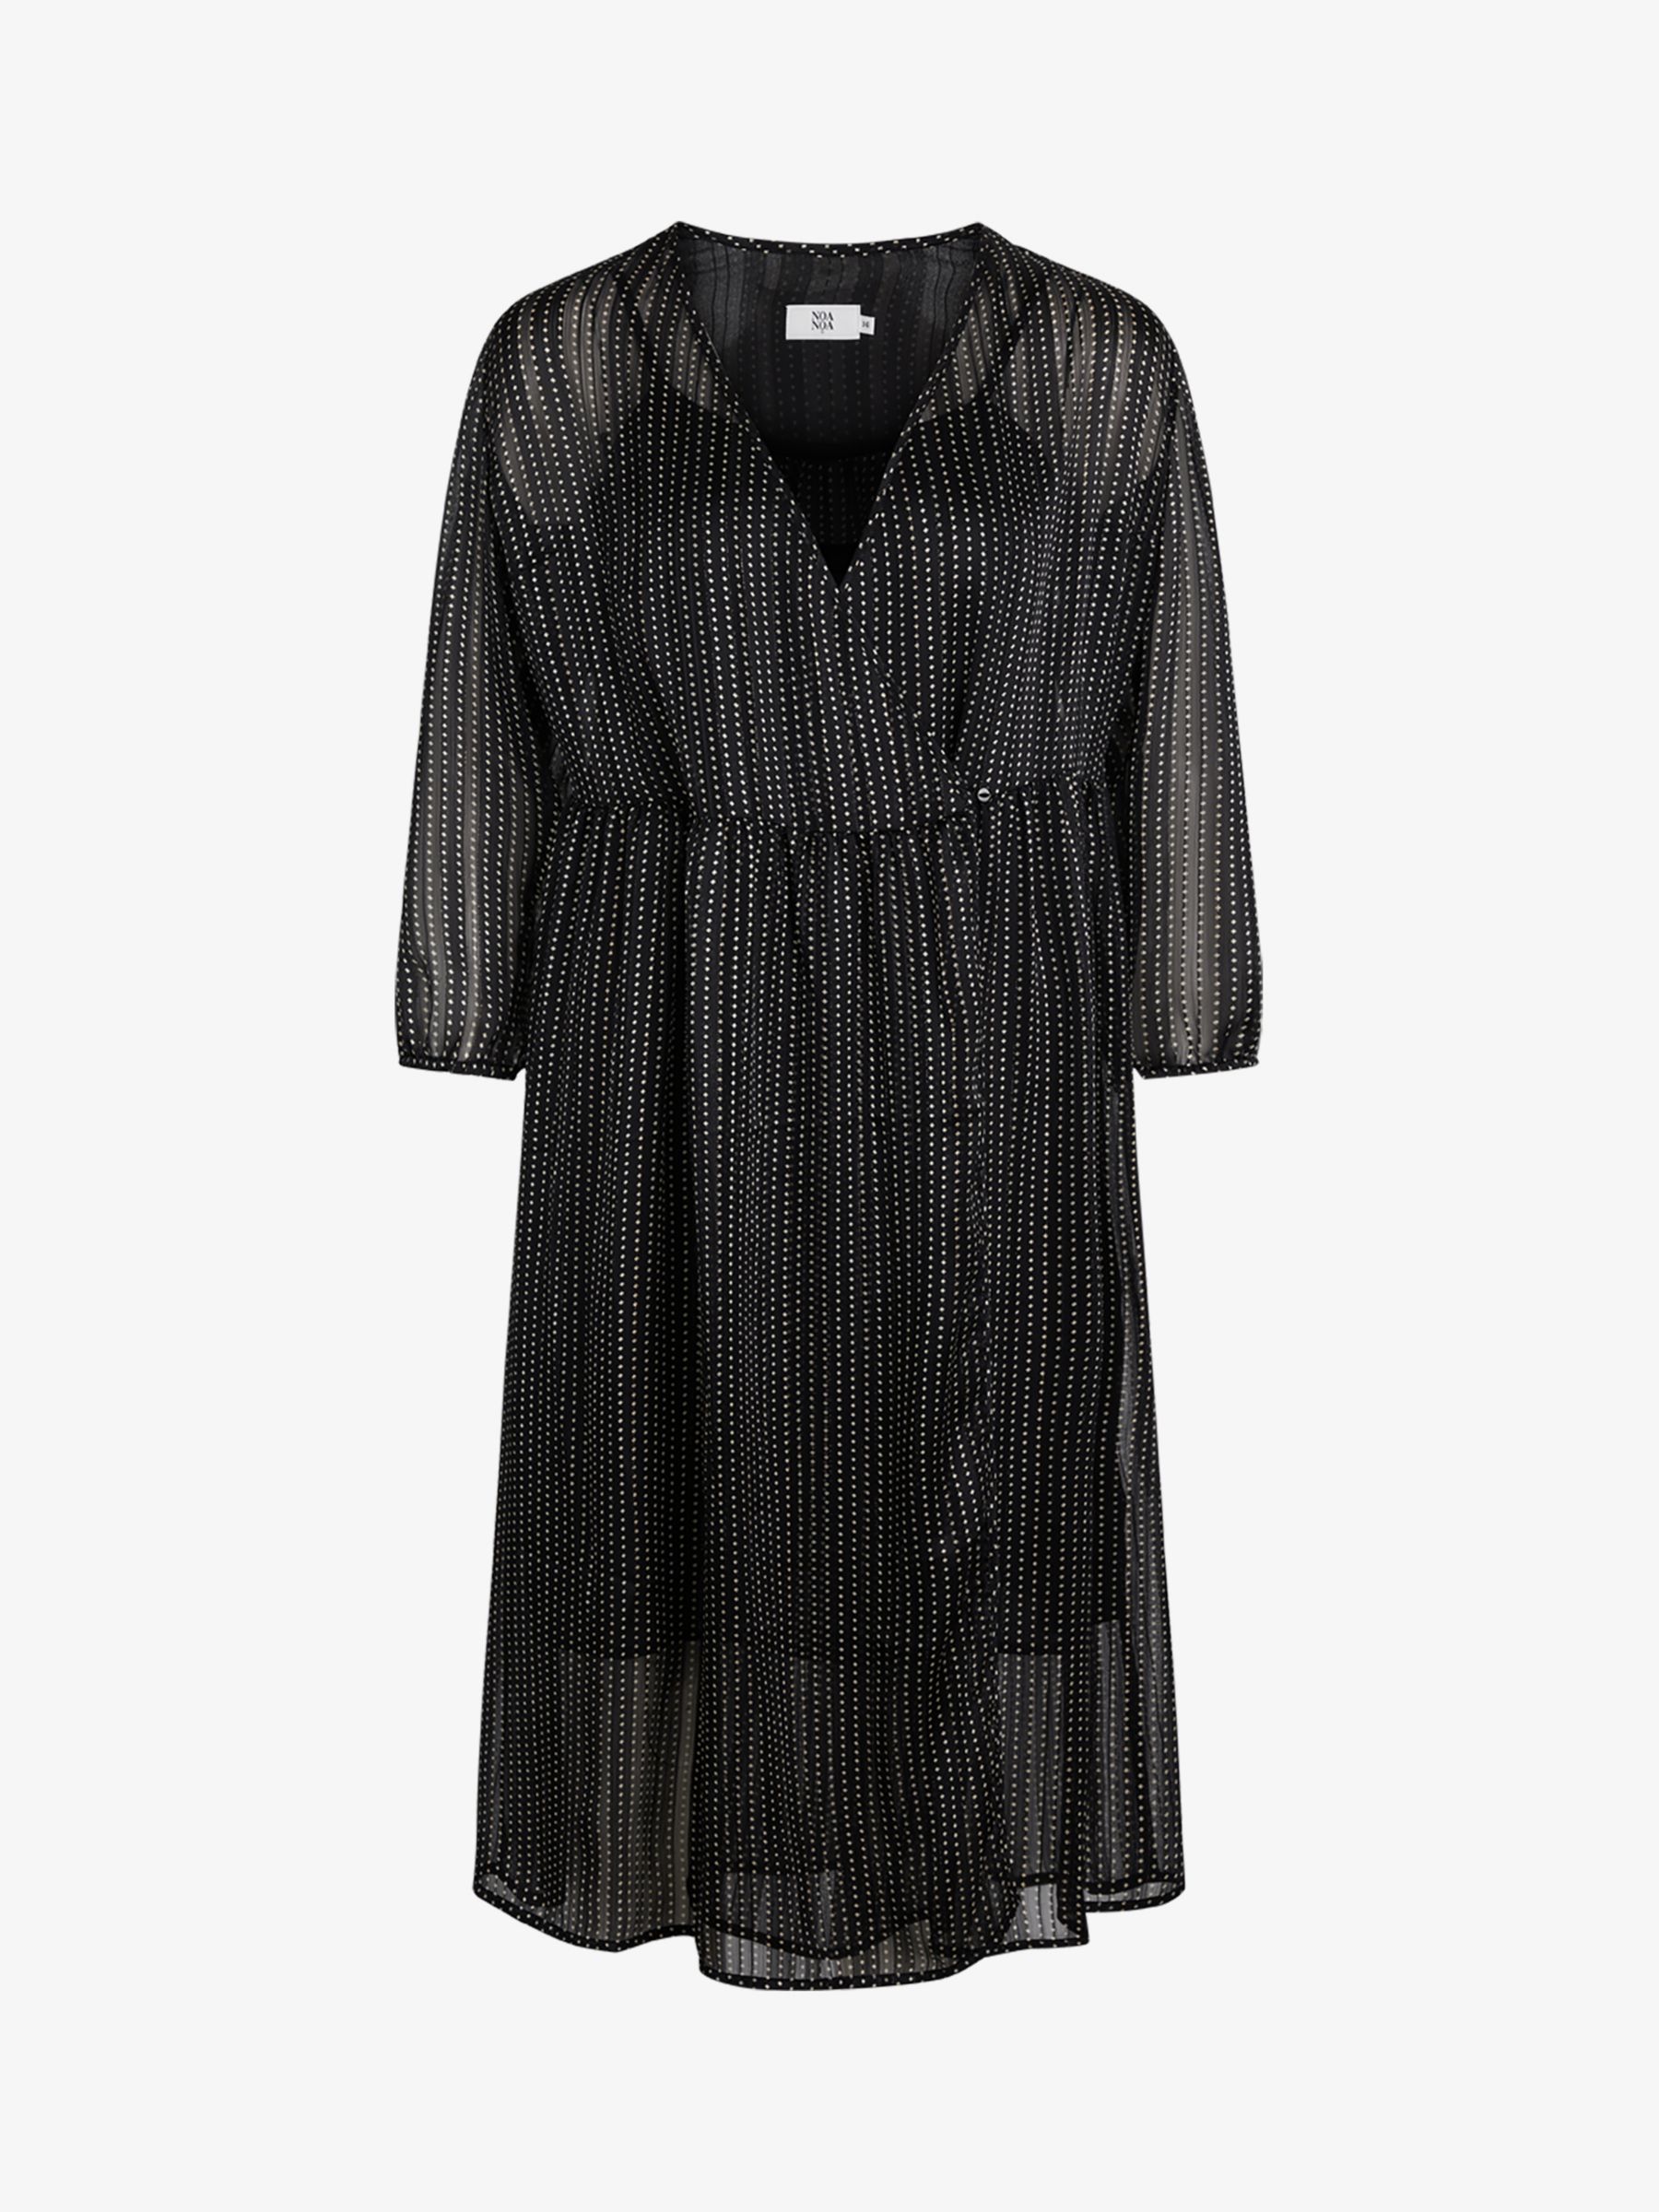 Buy Noa Noa Gertha Shimmer Georgette Dress, Black Online at johnlewis.com